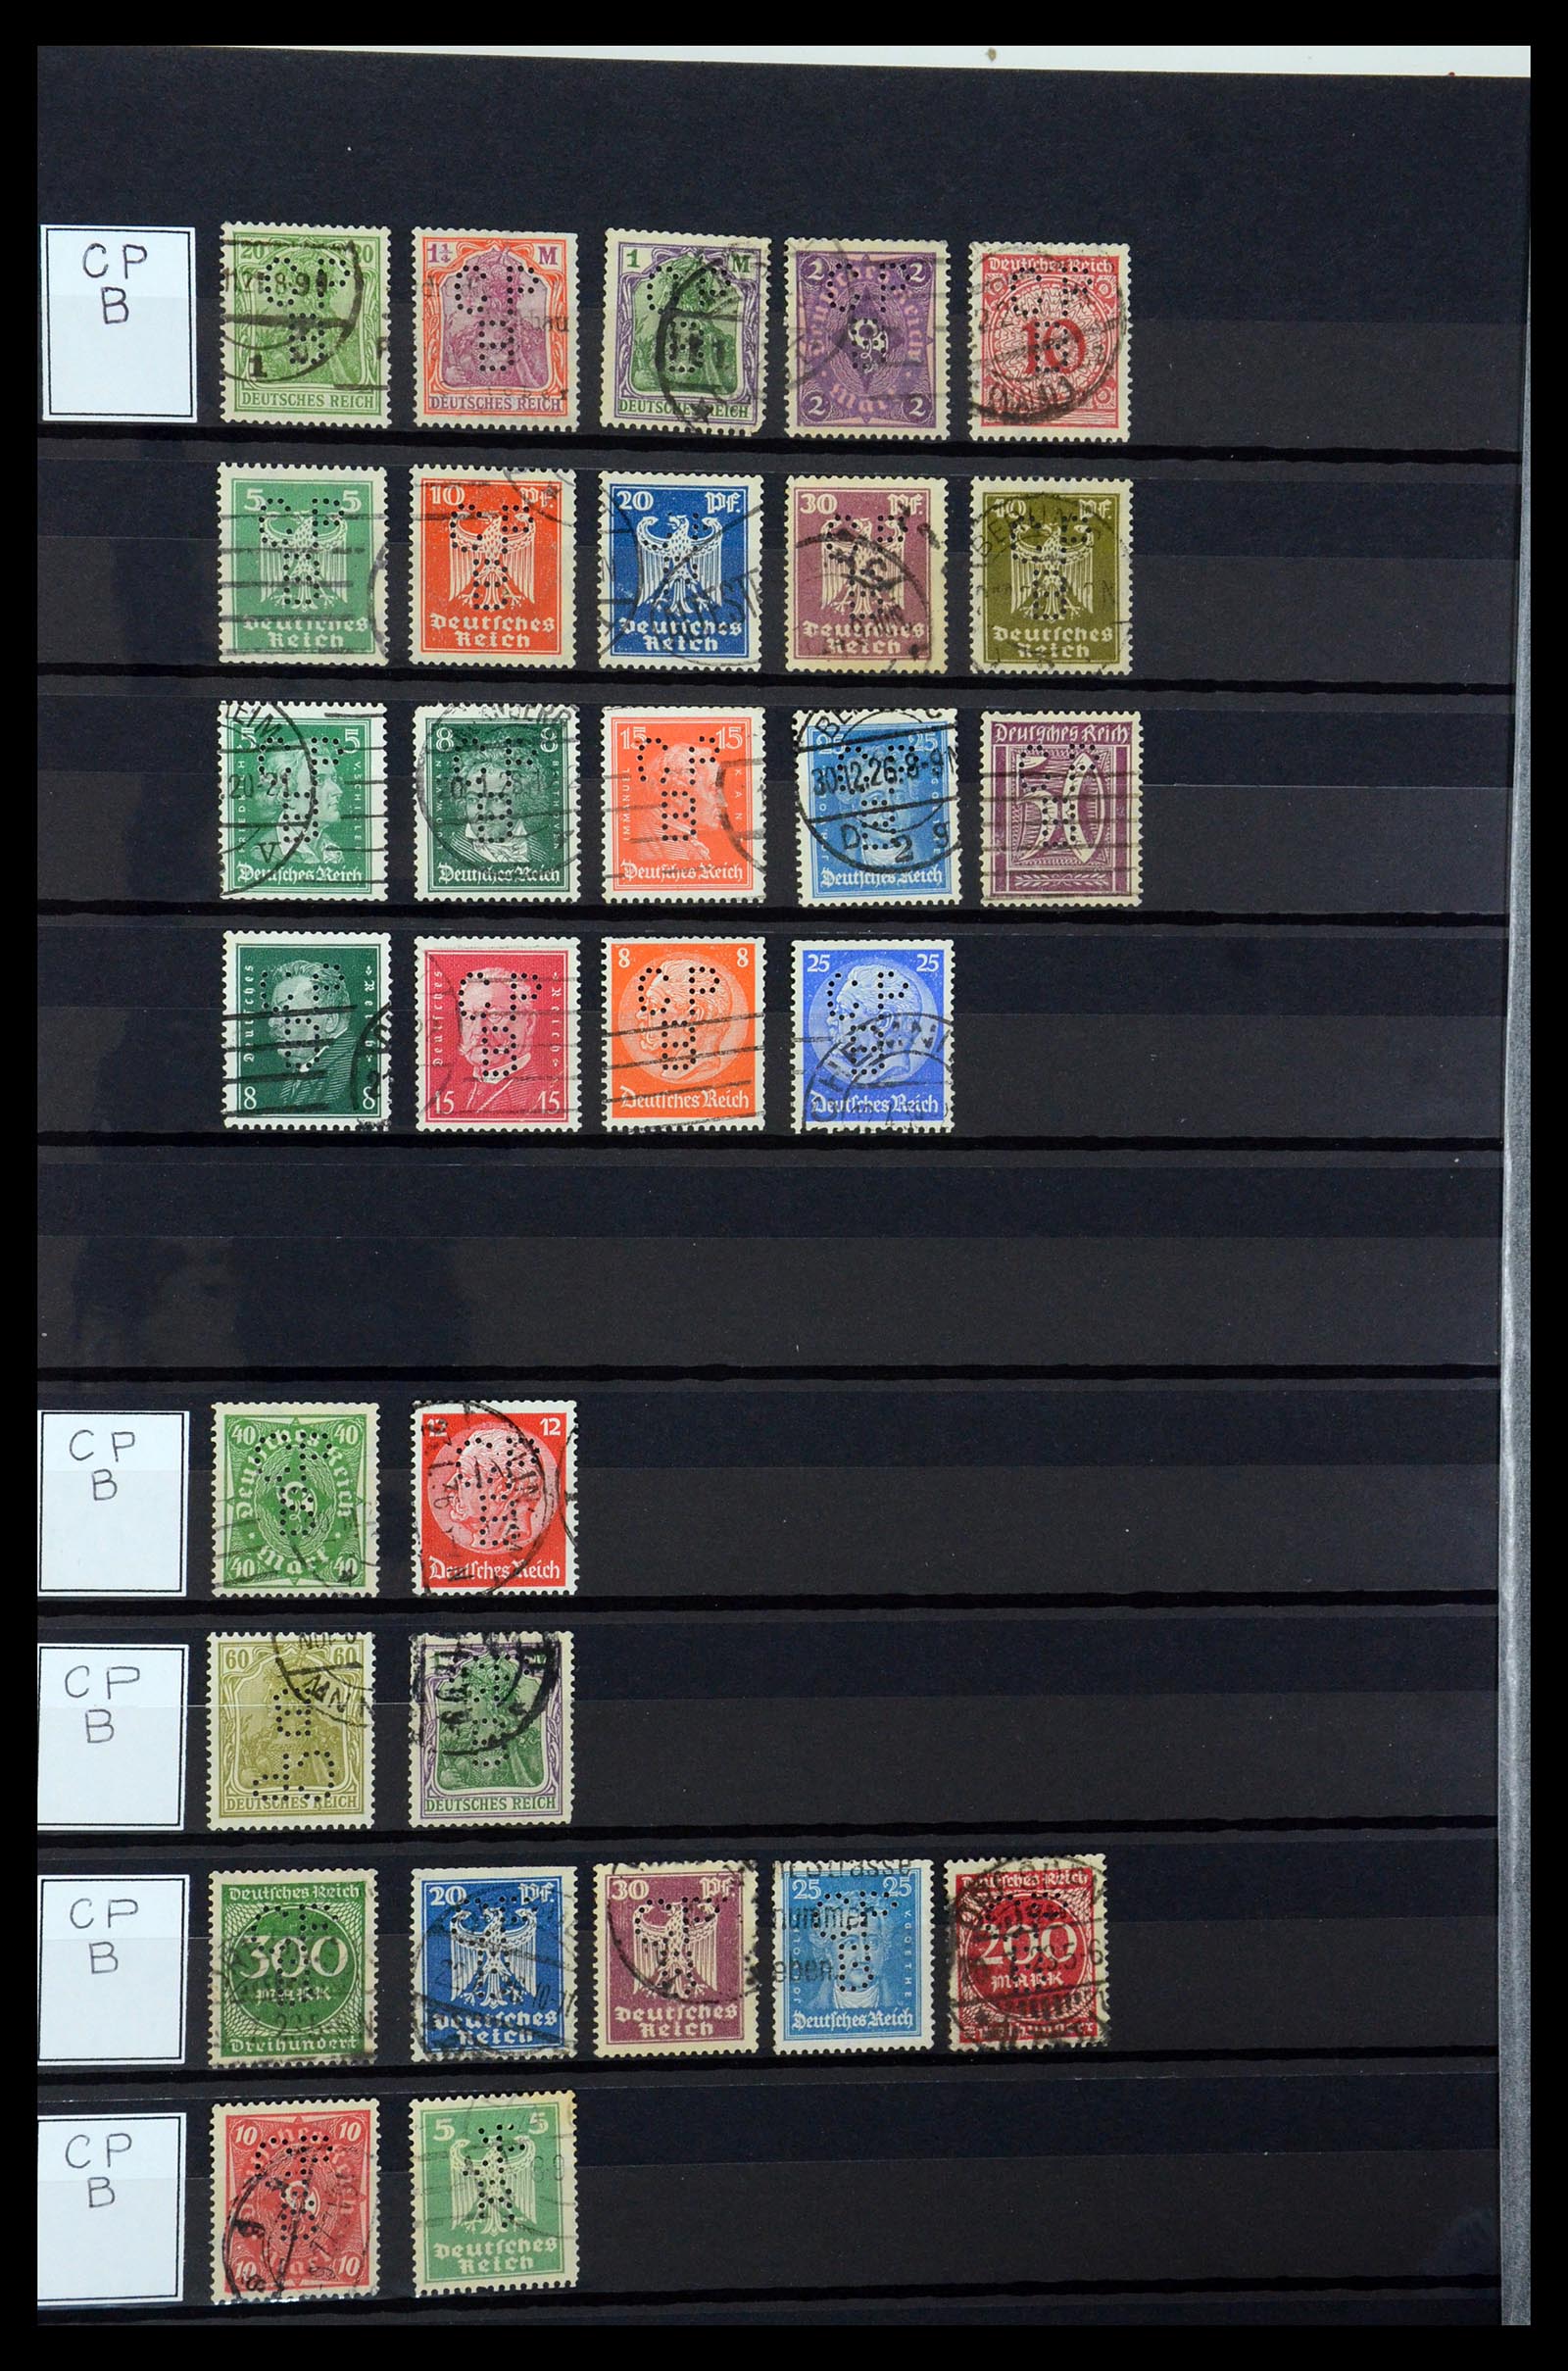 36405 078 - Stamp collection 36405 German Reich perfins 1880-1945.